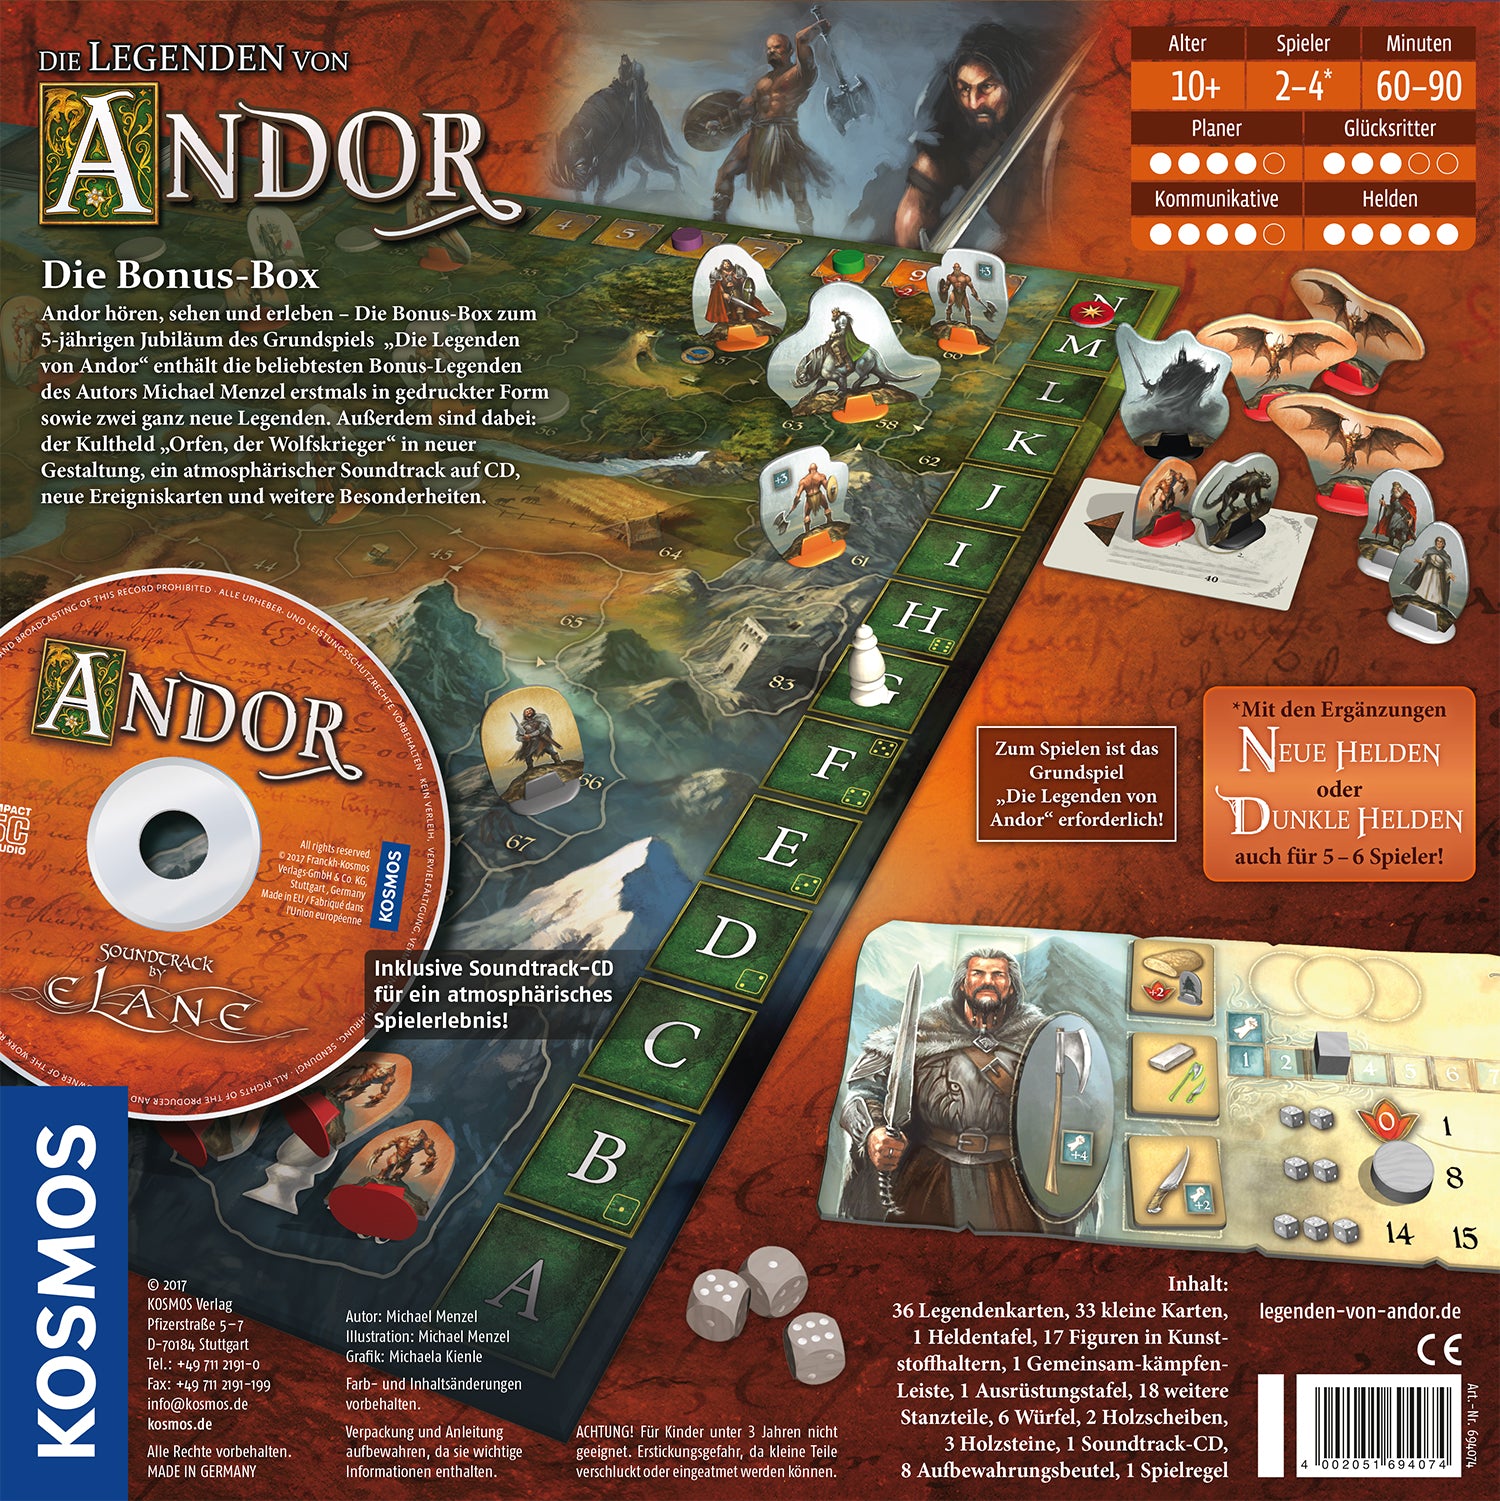 Die Legenden von Andor : Die Bonus-Box